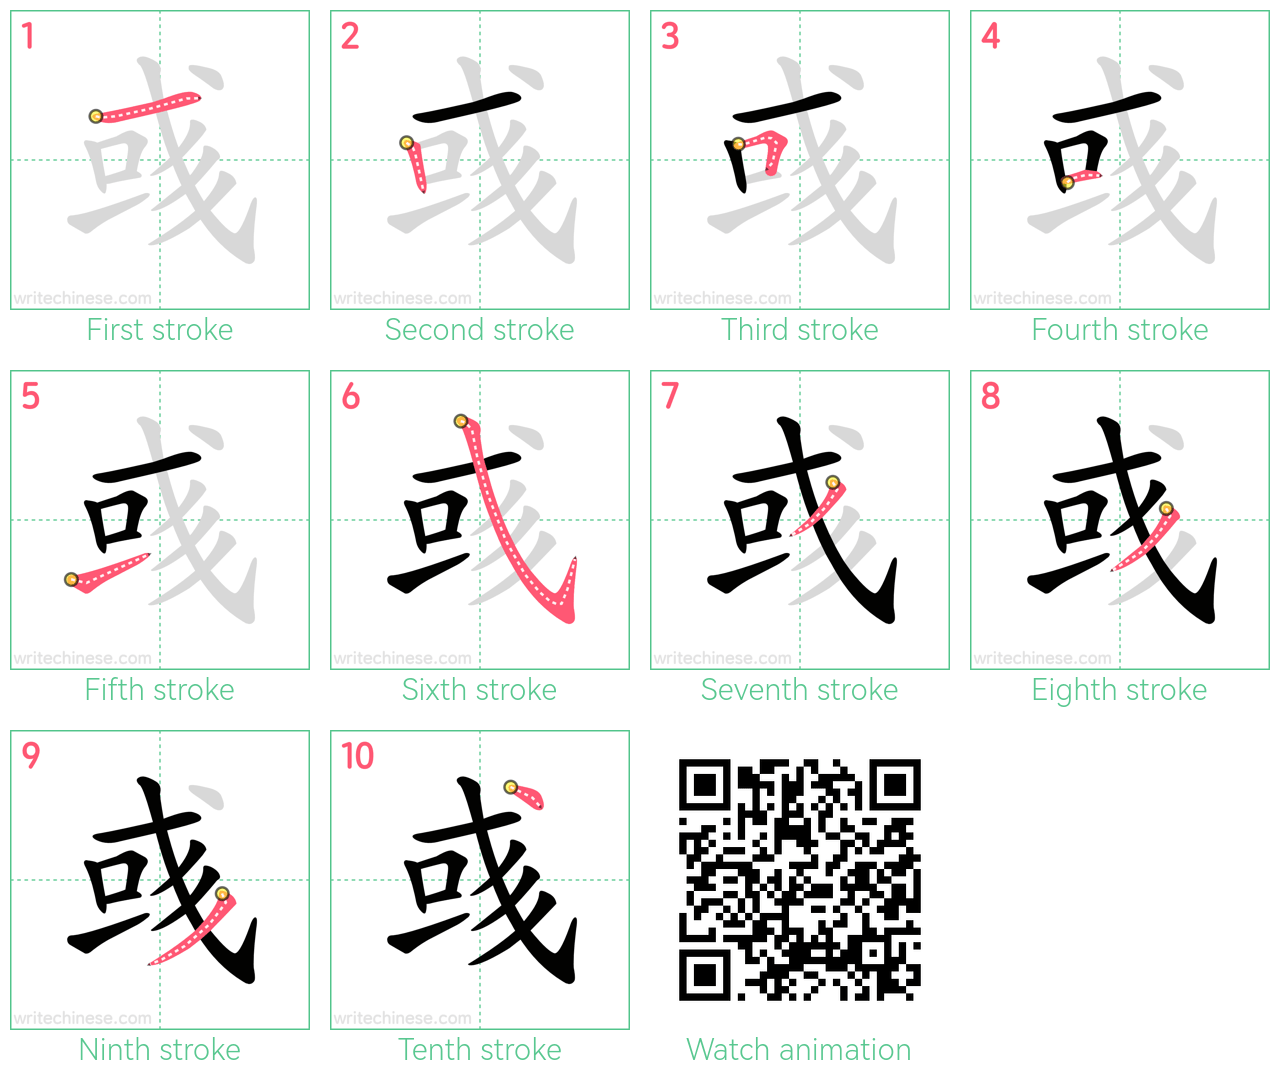 彧 step-by-step stroke order diagrams